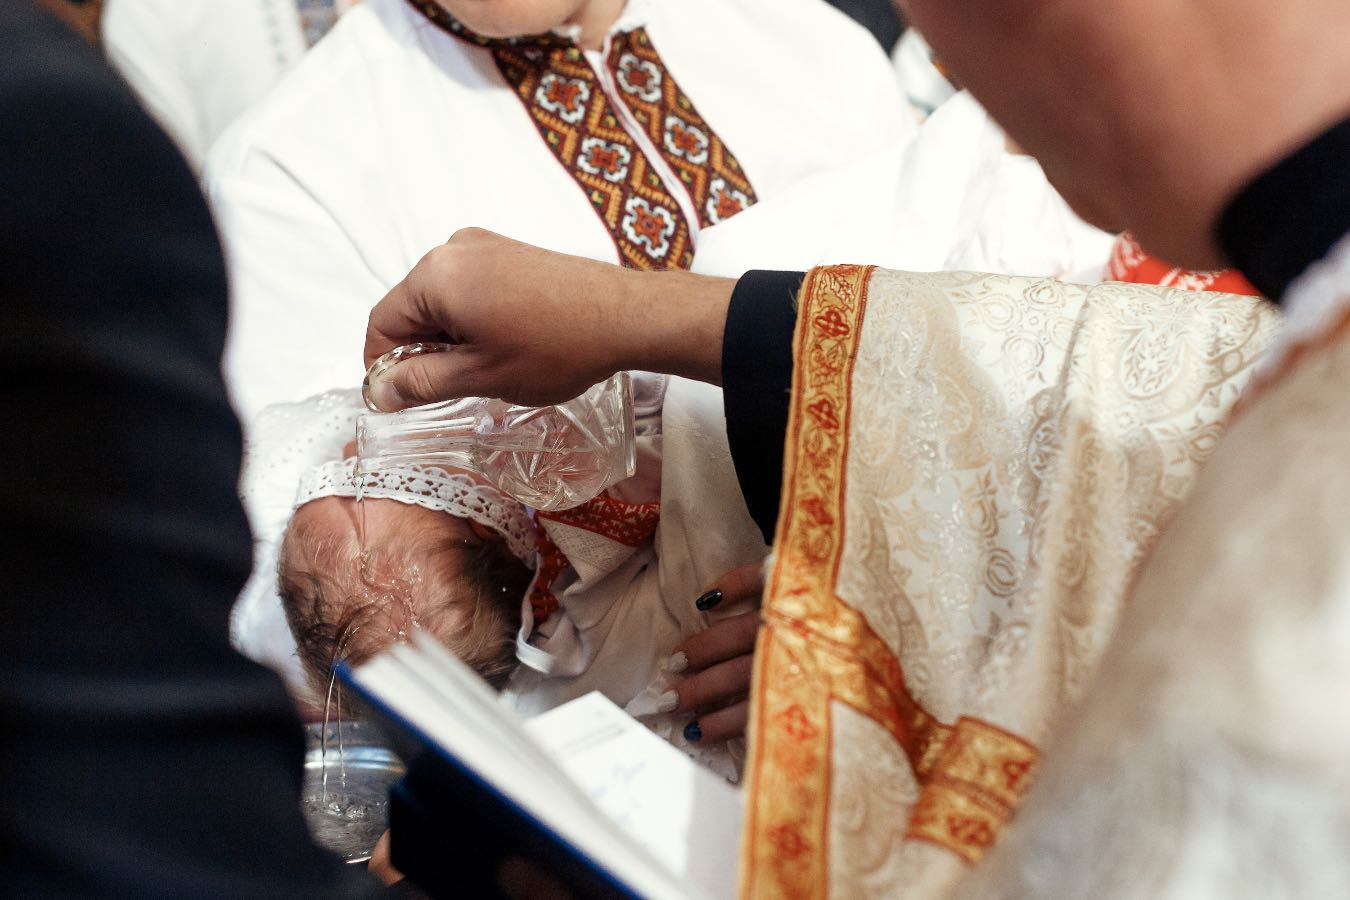 Ksiądz podczas chrztu do ojca dziecka: “Ty tłuku jeden!”. Nietypowe nagranie z kościoła hitem sieci